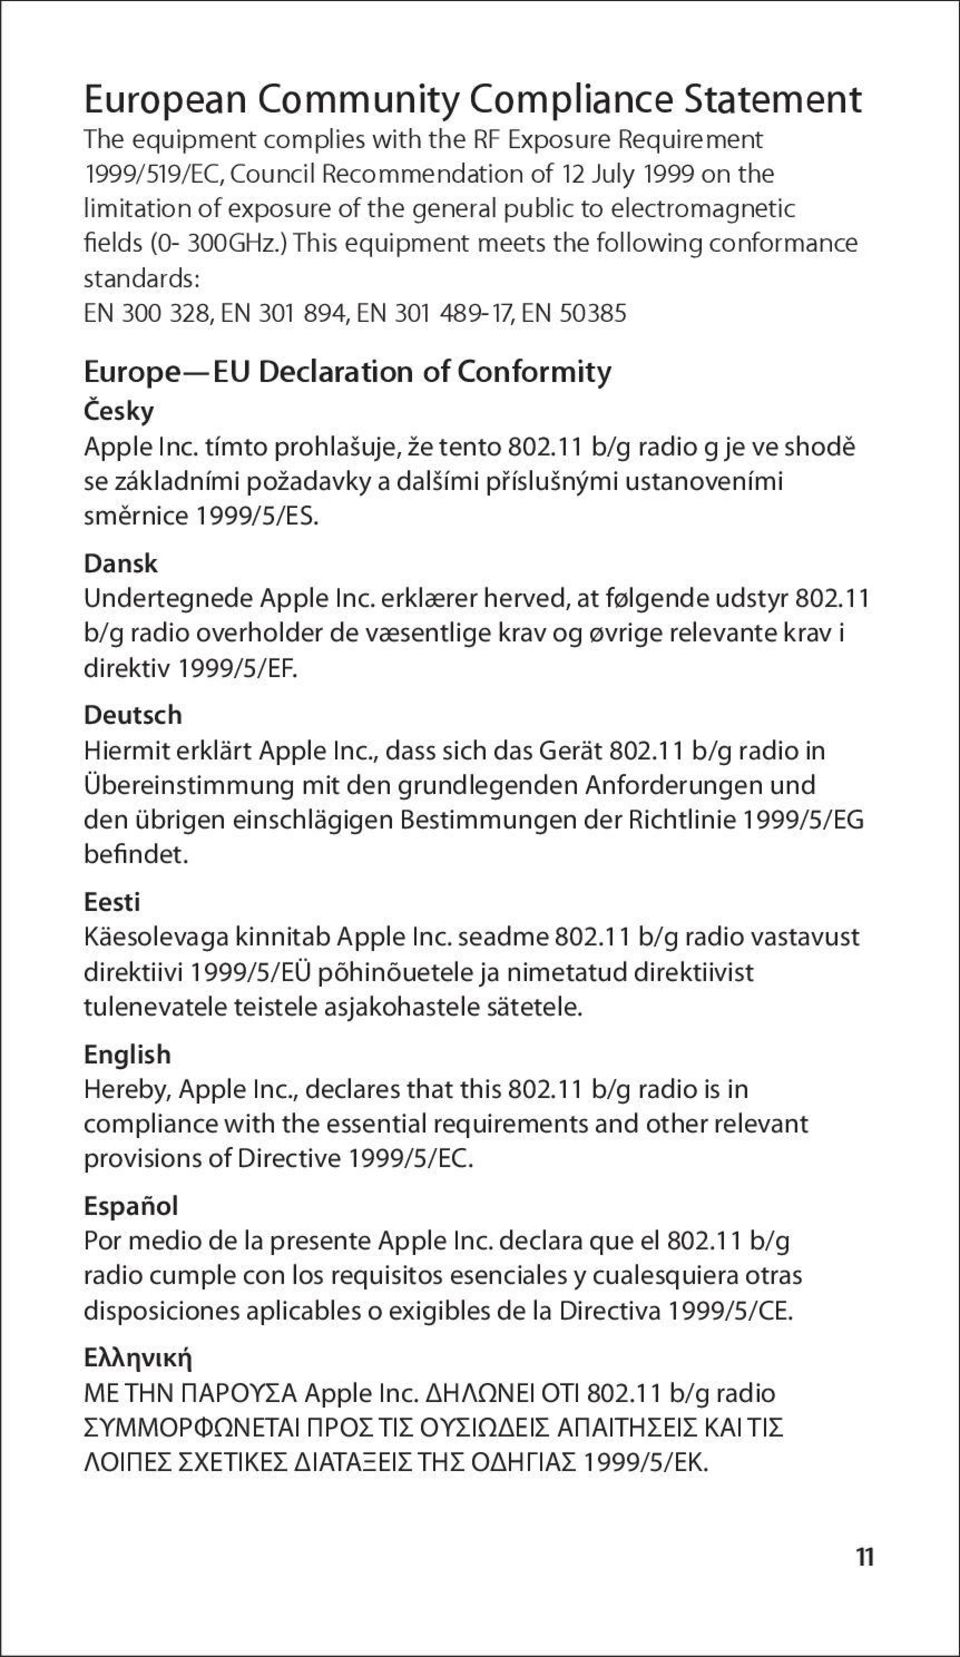 tímto prohlašuje, že tento 802.11 b/g radio g je ve shodě se základními požadavky a dalšími příslušnými ustanoveními směrnice 1999/5/ES. Dansk Undertegnede Apple Inc.